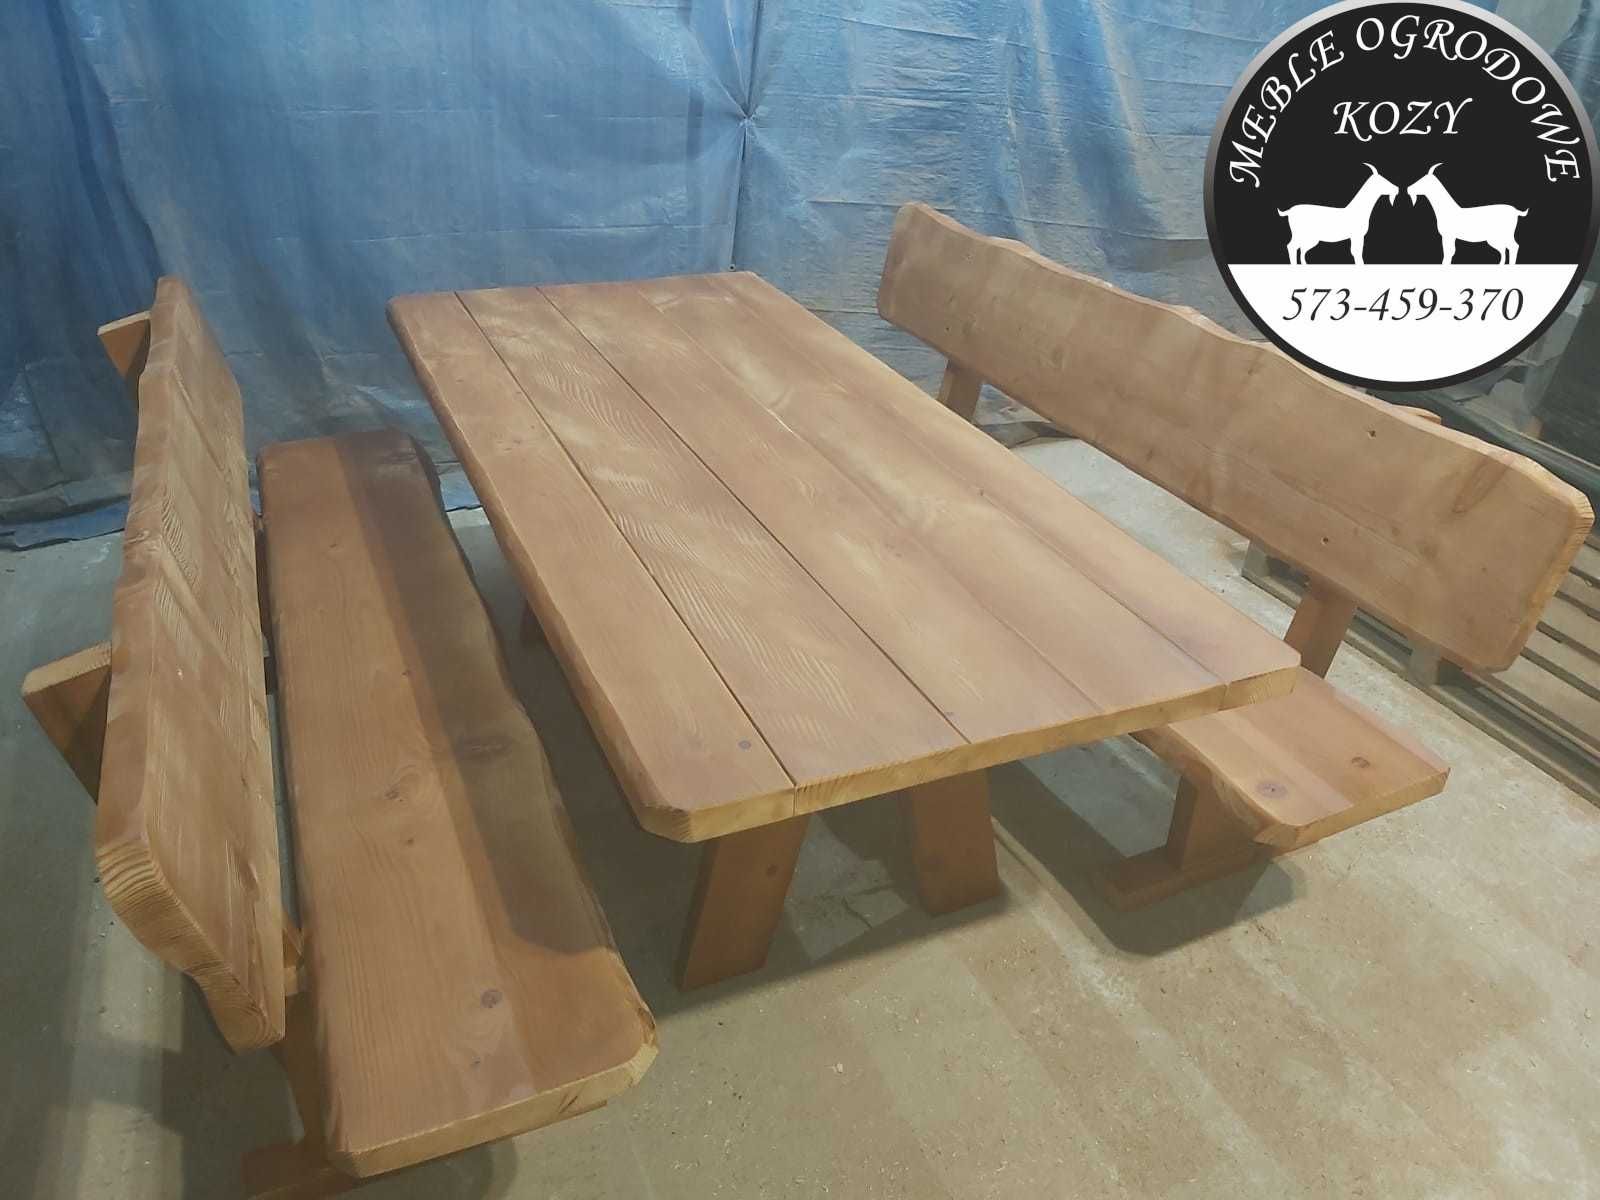 Drewniane meble ogrodowe góralskie biesiadne / lite drewno /stół ławki